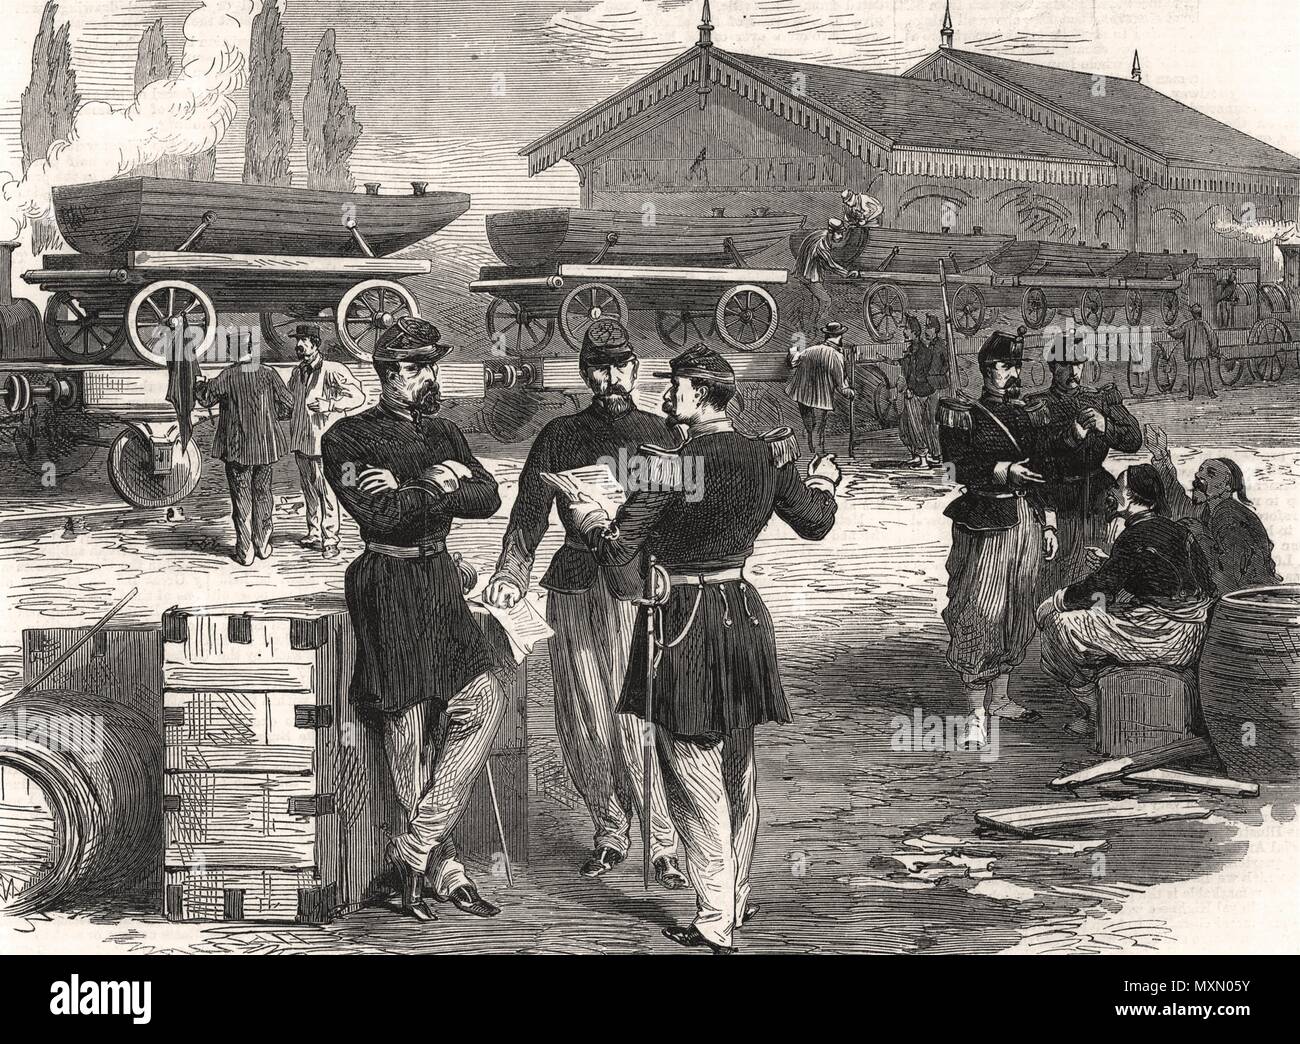 La guerre train militaire français de bateaux pour les ponts de bateaux. France 1870. L'Illustrated London News Banque D'Images